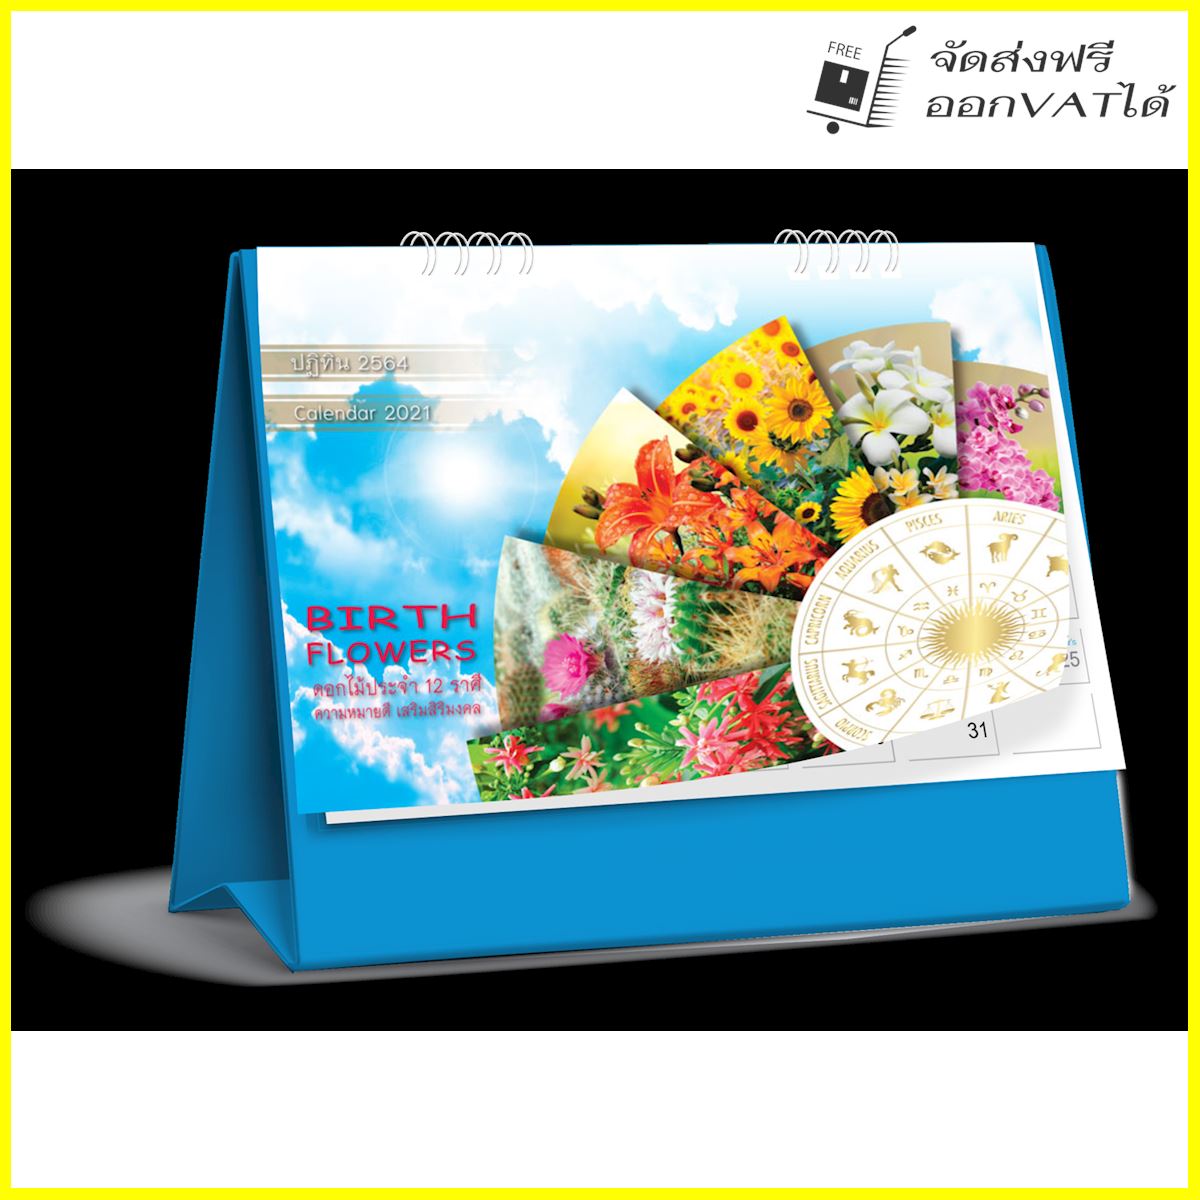 ปฏิทิน ตั้งโต๊ะ 2564 Calendar 2021 ชุด Birth Flowers_ดอกไม้ประจํา 12 ราศี ความหมายดี เสริมสิริมงคล จำนวน 1 เล่ม ขนาด 6*8 นิ้ว แนวนอน จำนวน 8 แผ่น รวมโปสการ์ด